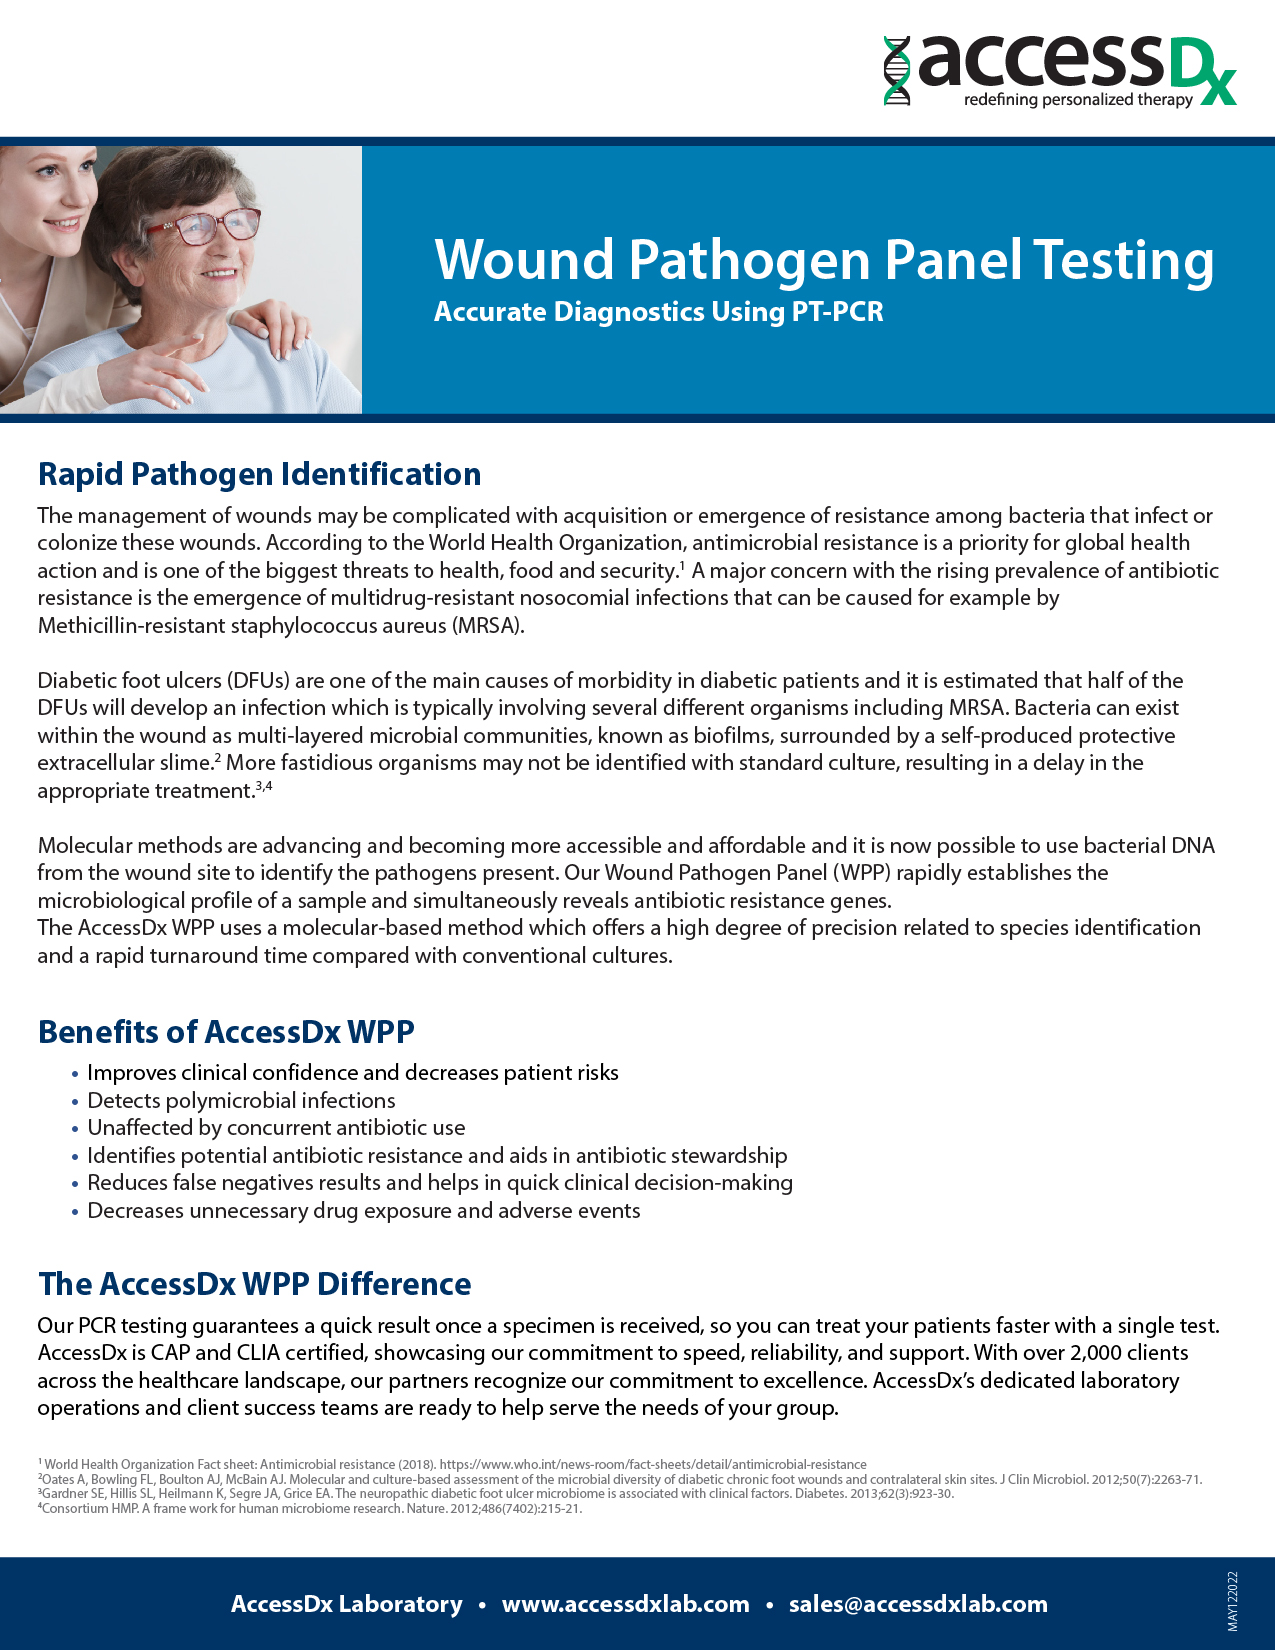 Wound pathogen cover